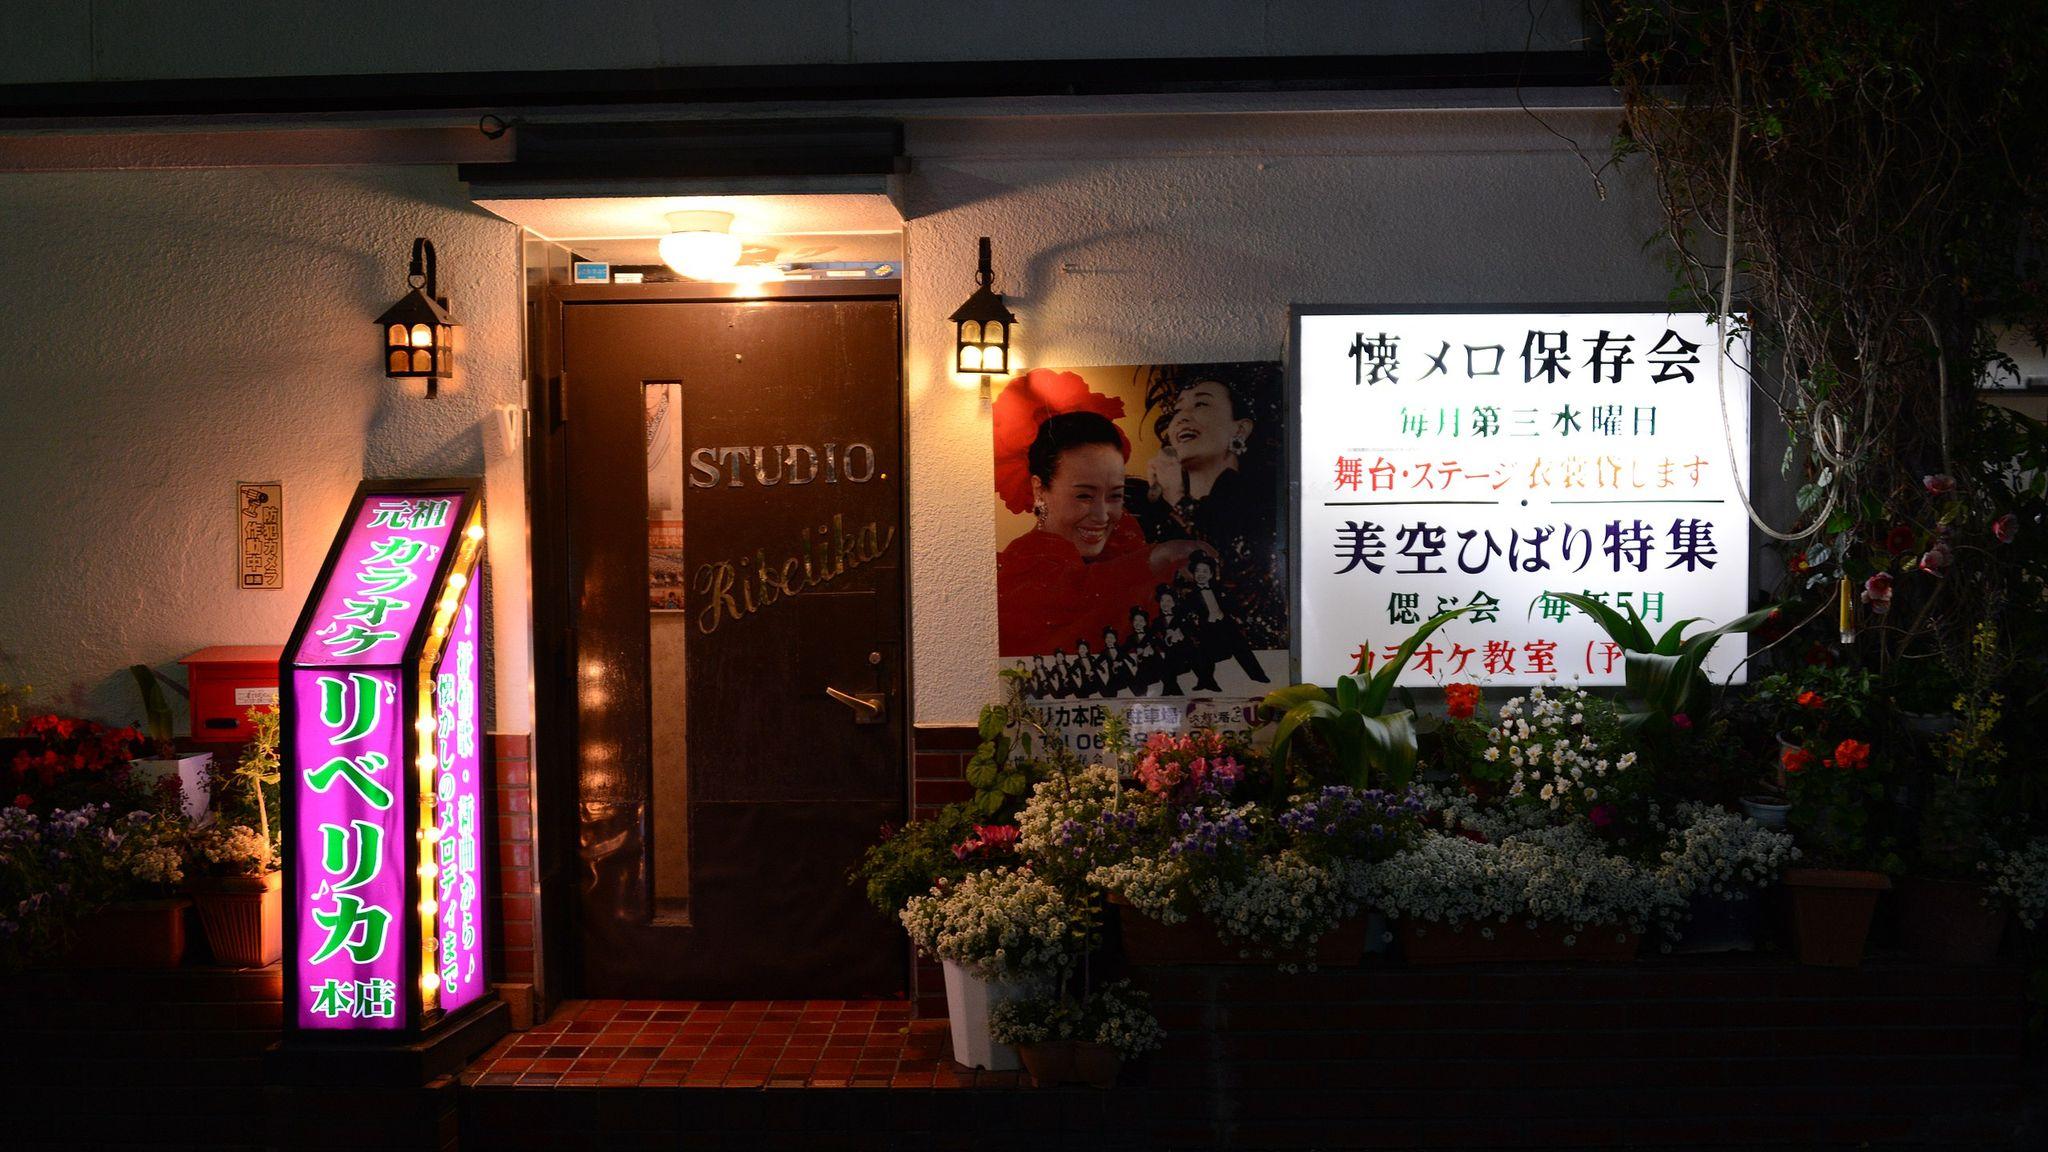 Karaoke Bar in Japan